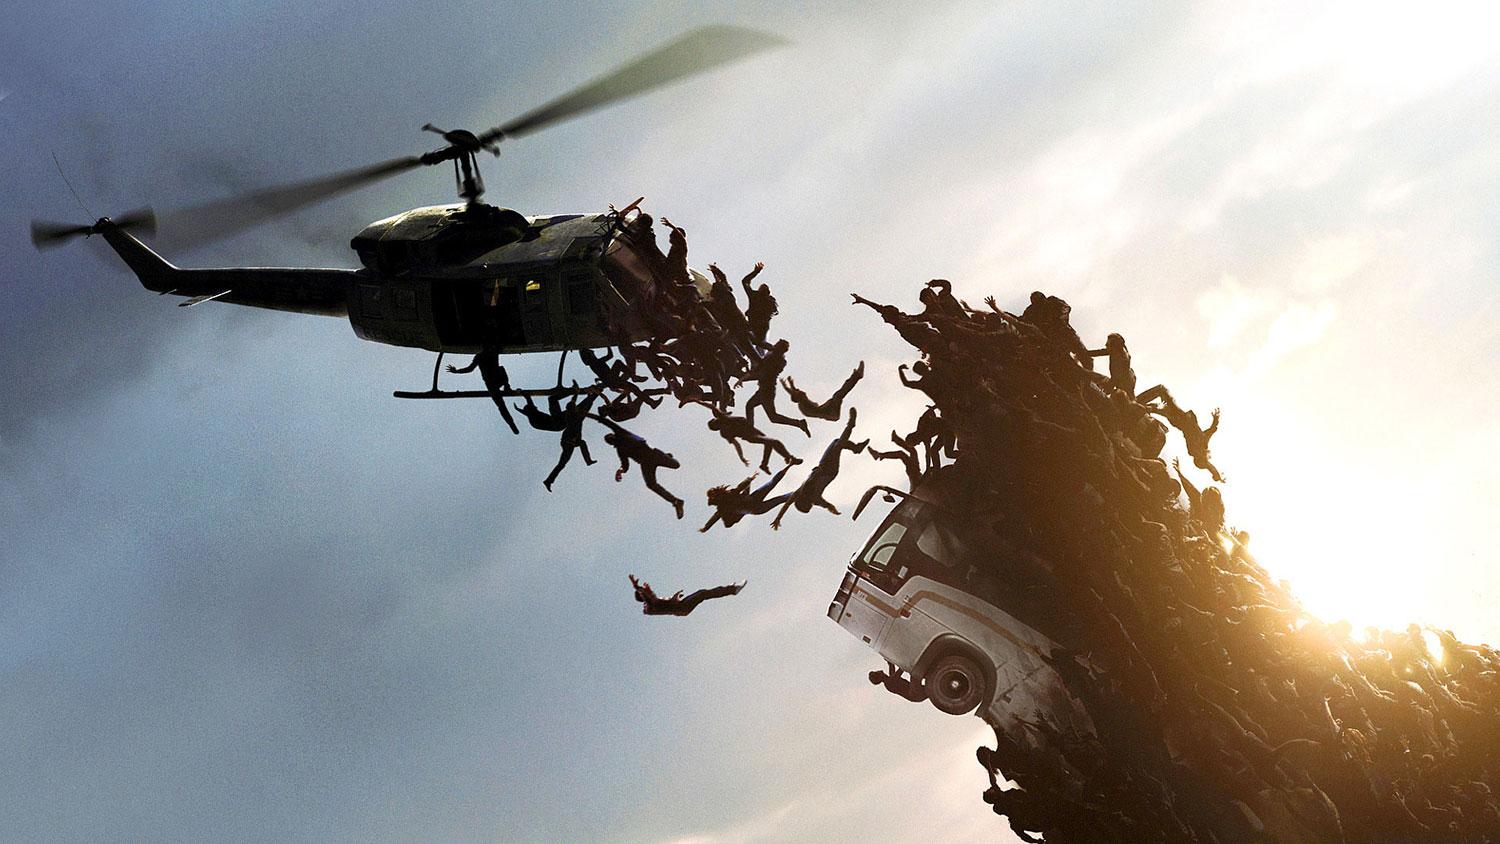 guerra mundial z zombies atacando helicoptero